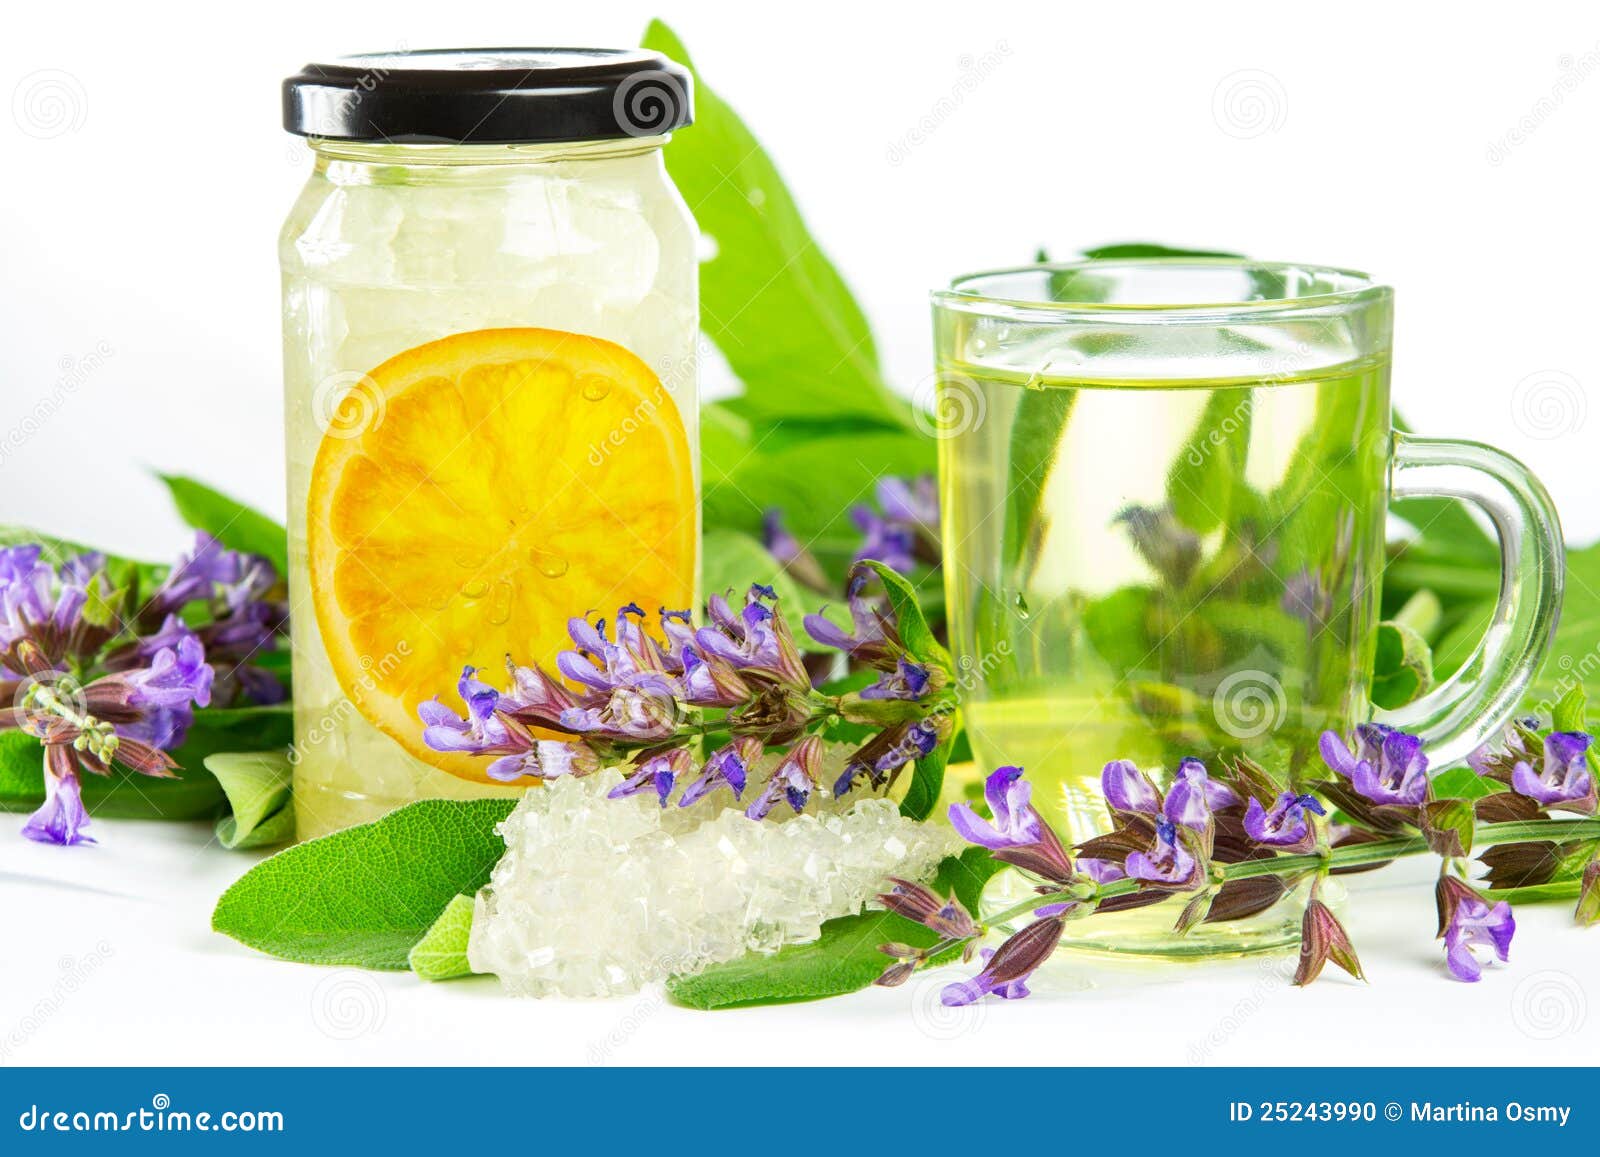 sweet herbal tea and naturopathy